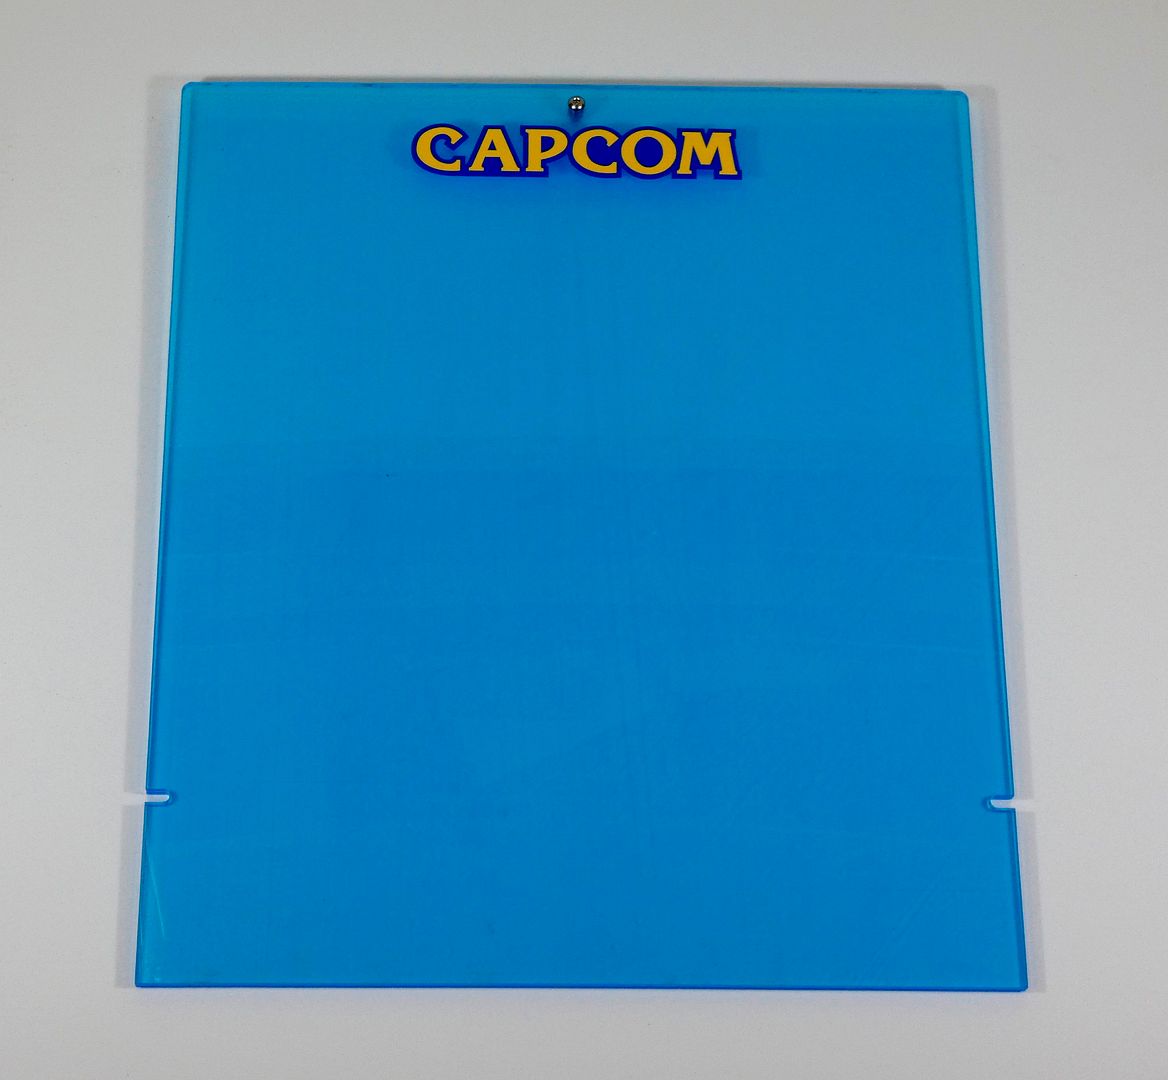 Capcom%20Cute%202_zpscokjklt3.jpg